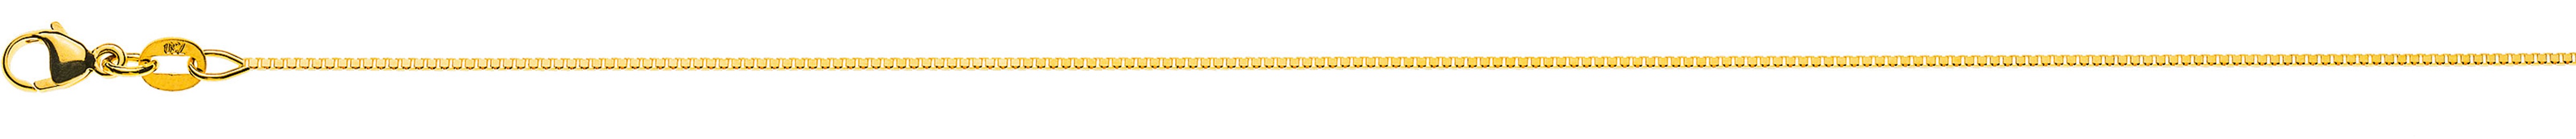 AURONOS Prestige Halskette Gelbgold 18K Venezianerkette diamantiert 55cm 0.8mm